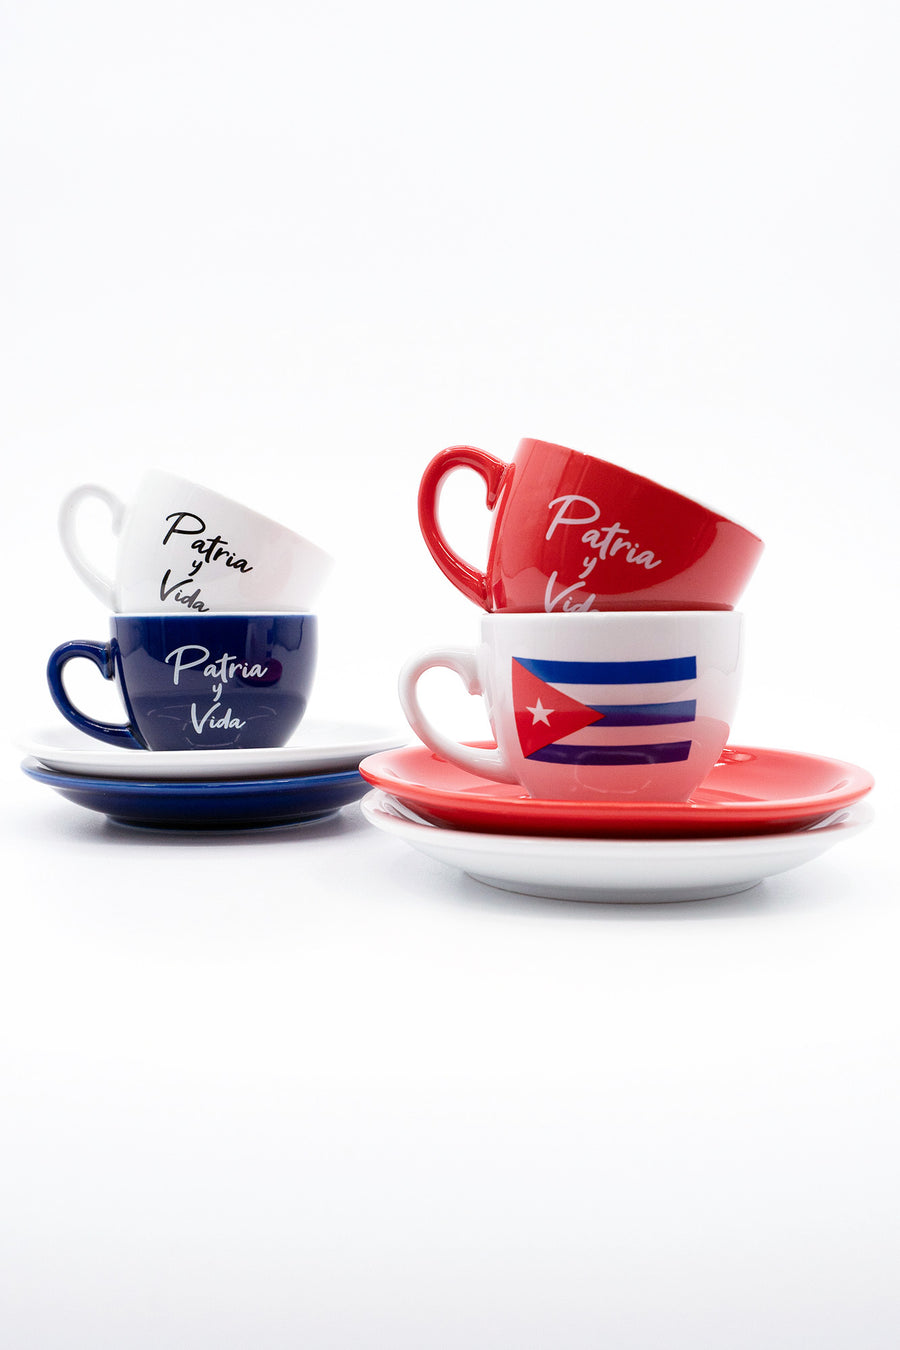 Patria Y Vida Cafecito Cups